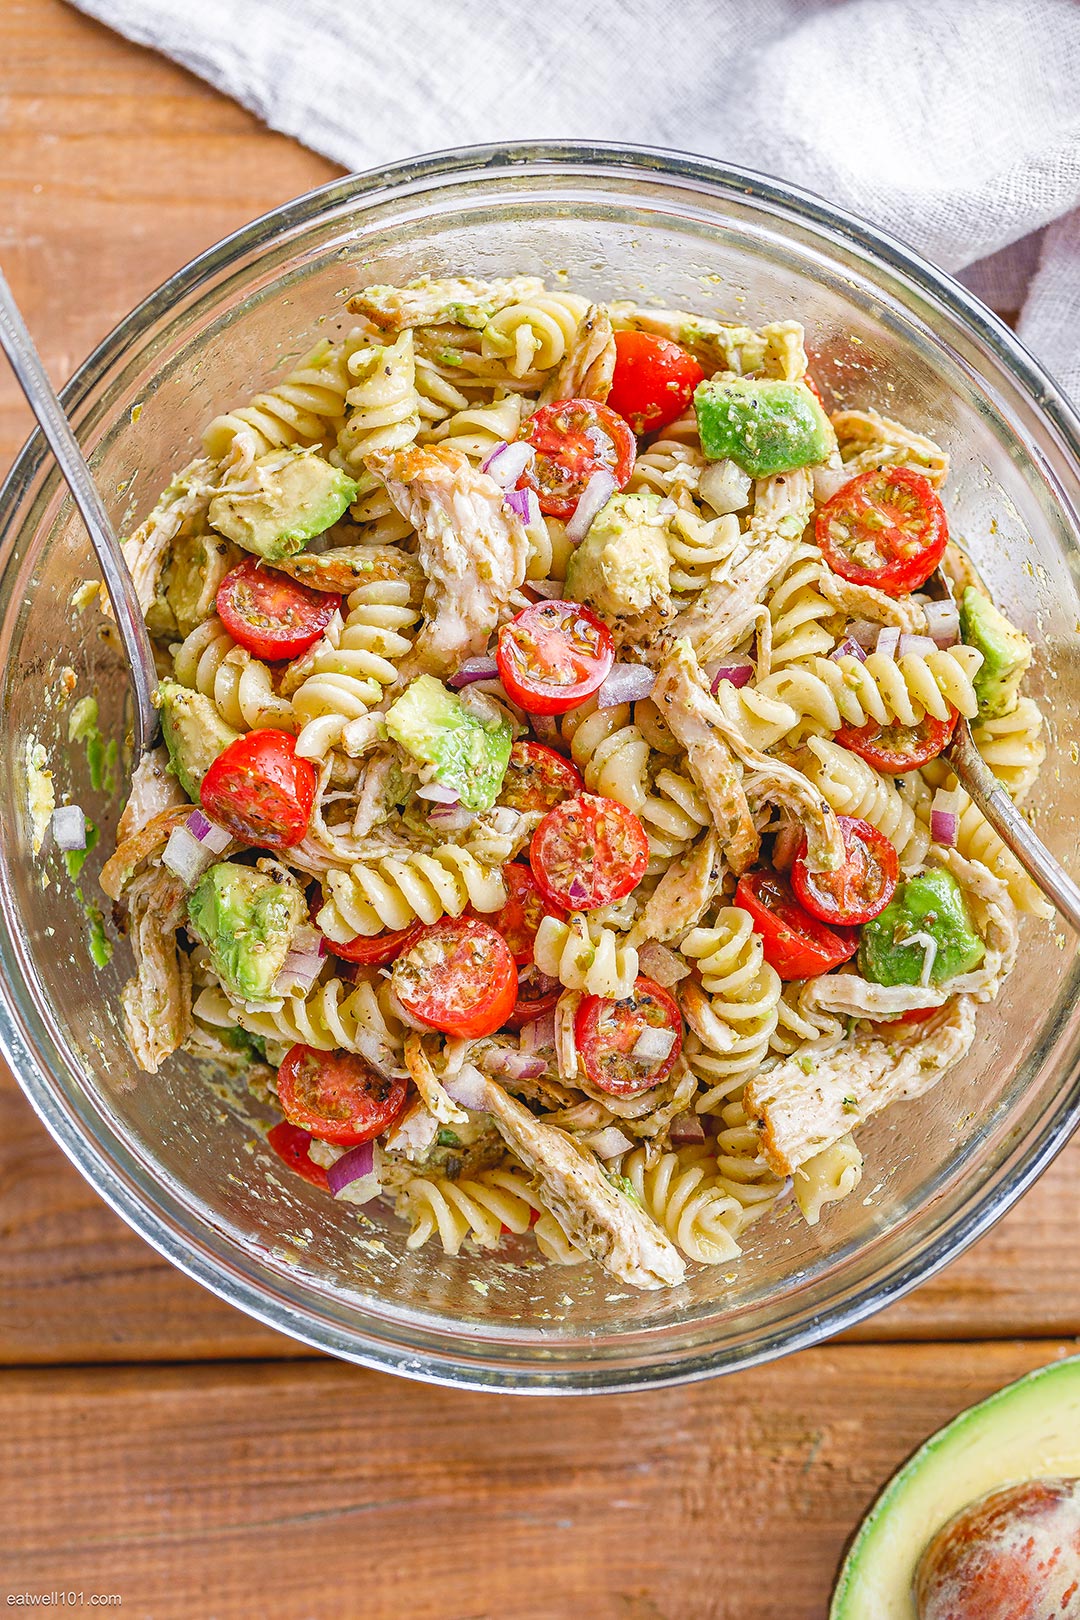 Chicken Pasta Salad Recipe with Pesto, Avocado, and Tomato – Chicken